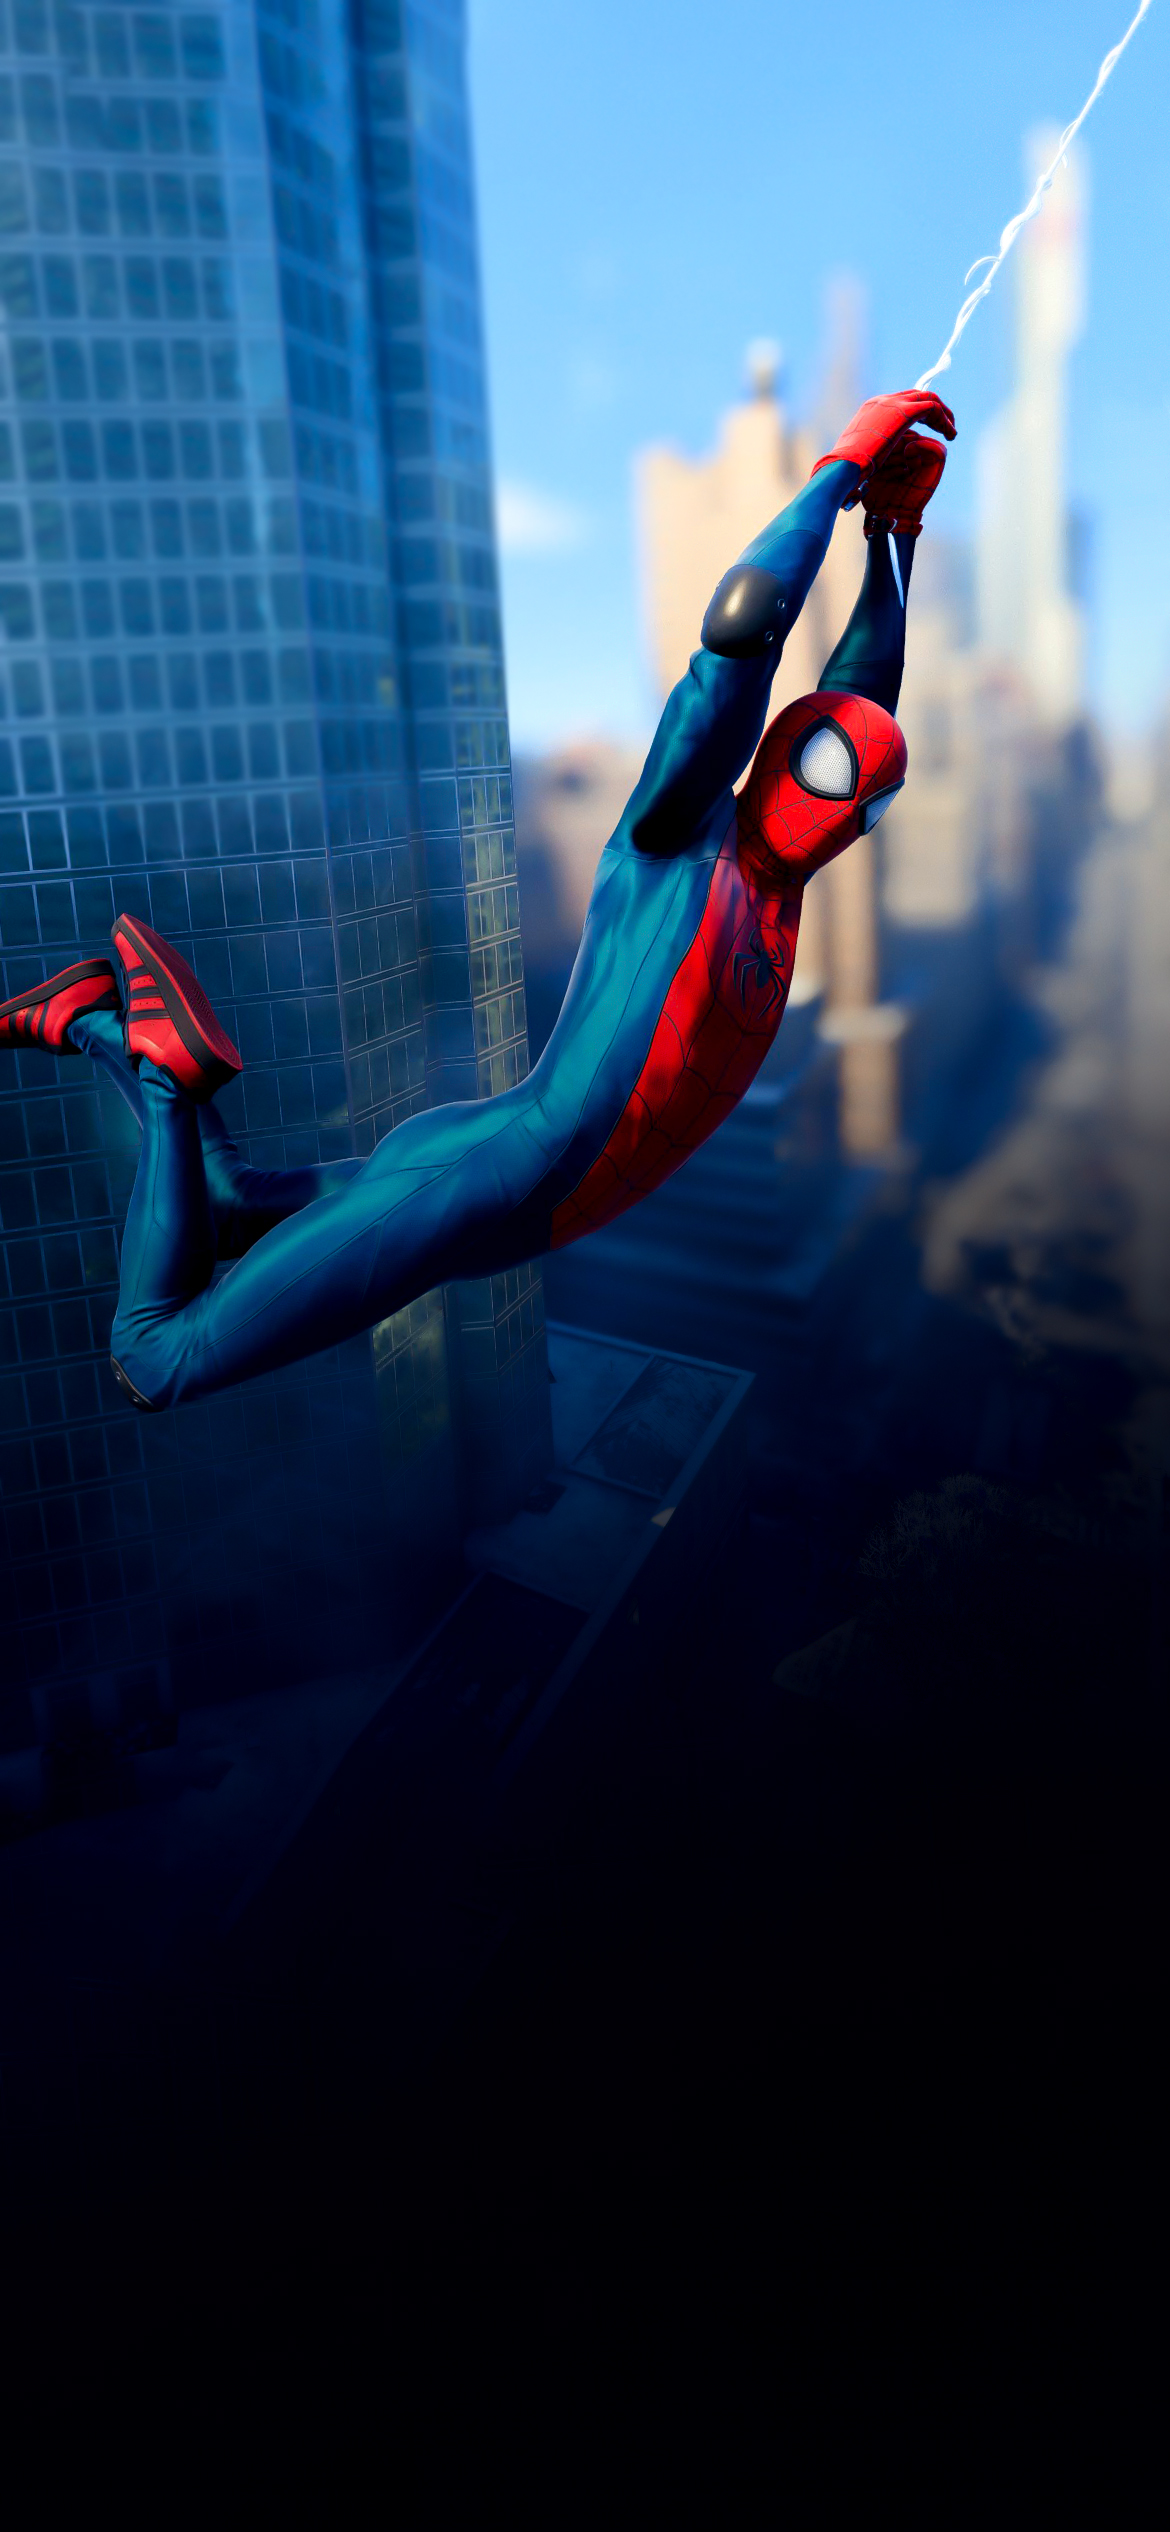 Wallpaper Spider-man Miles Morales với thiết kế độc đáo và sáng tạo sẽ là một sự lựa chọn hoàn hảo cho những ai yêu thích siêu anh hùng này. Với những hình ảnh đầy cảm xúc và tinh tế, bạn sẽ có được không gian làm việc và giải trí độc đáo và sang trọng.